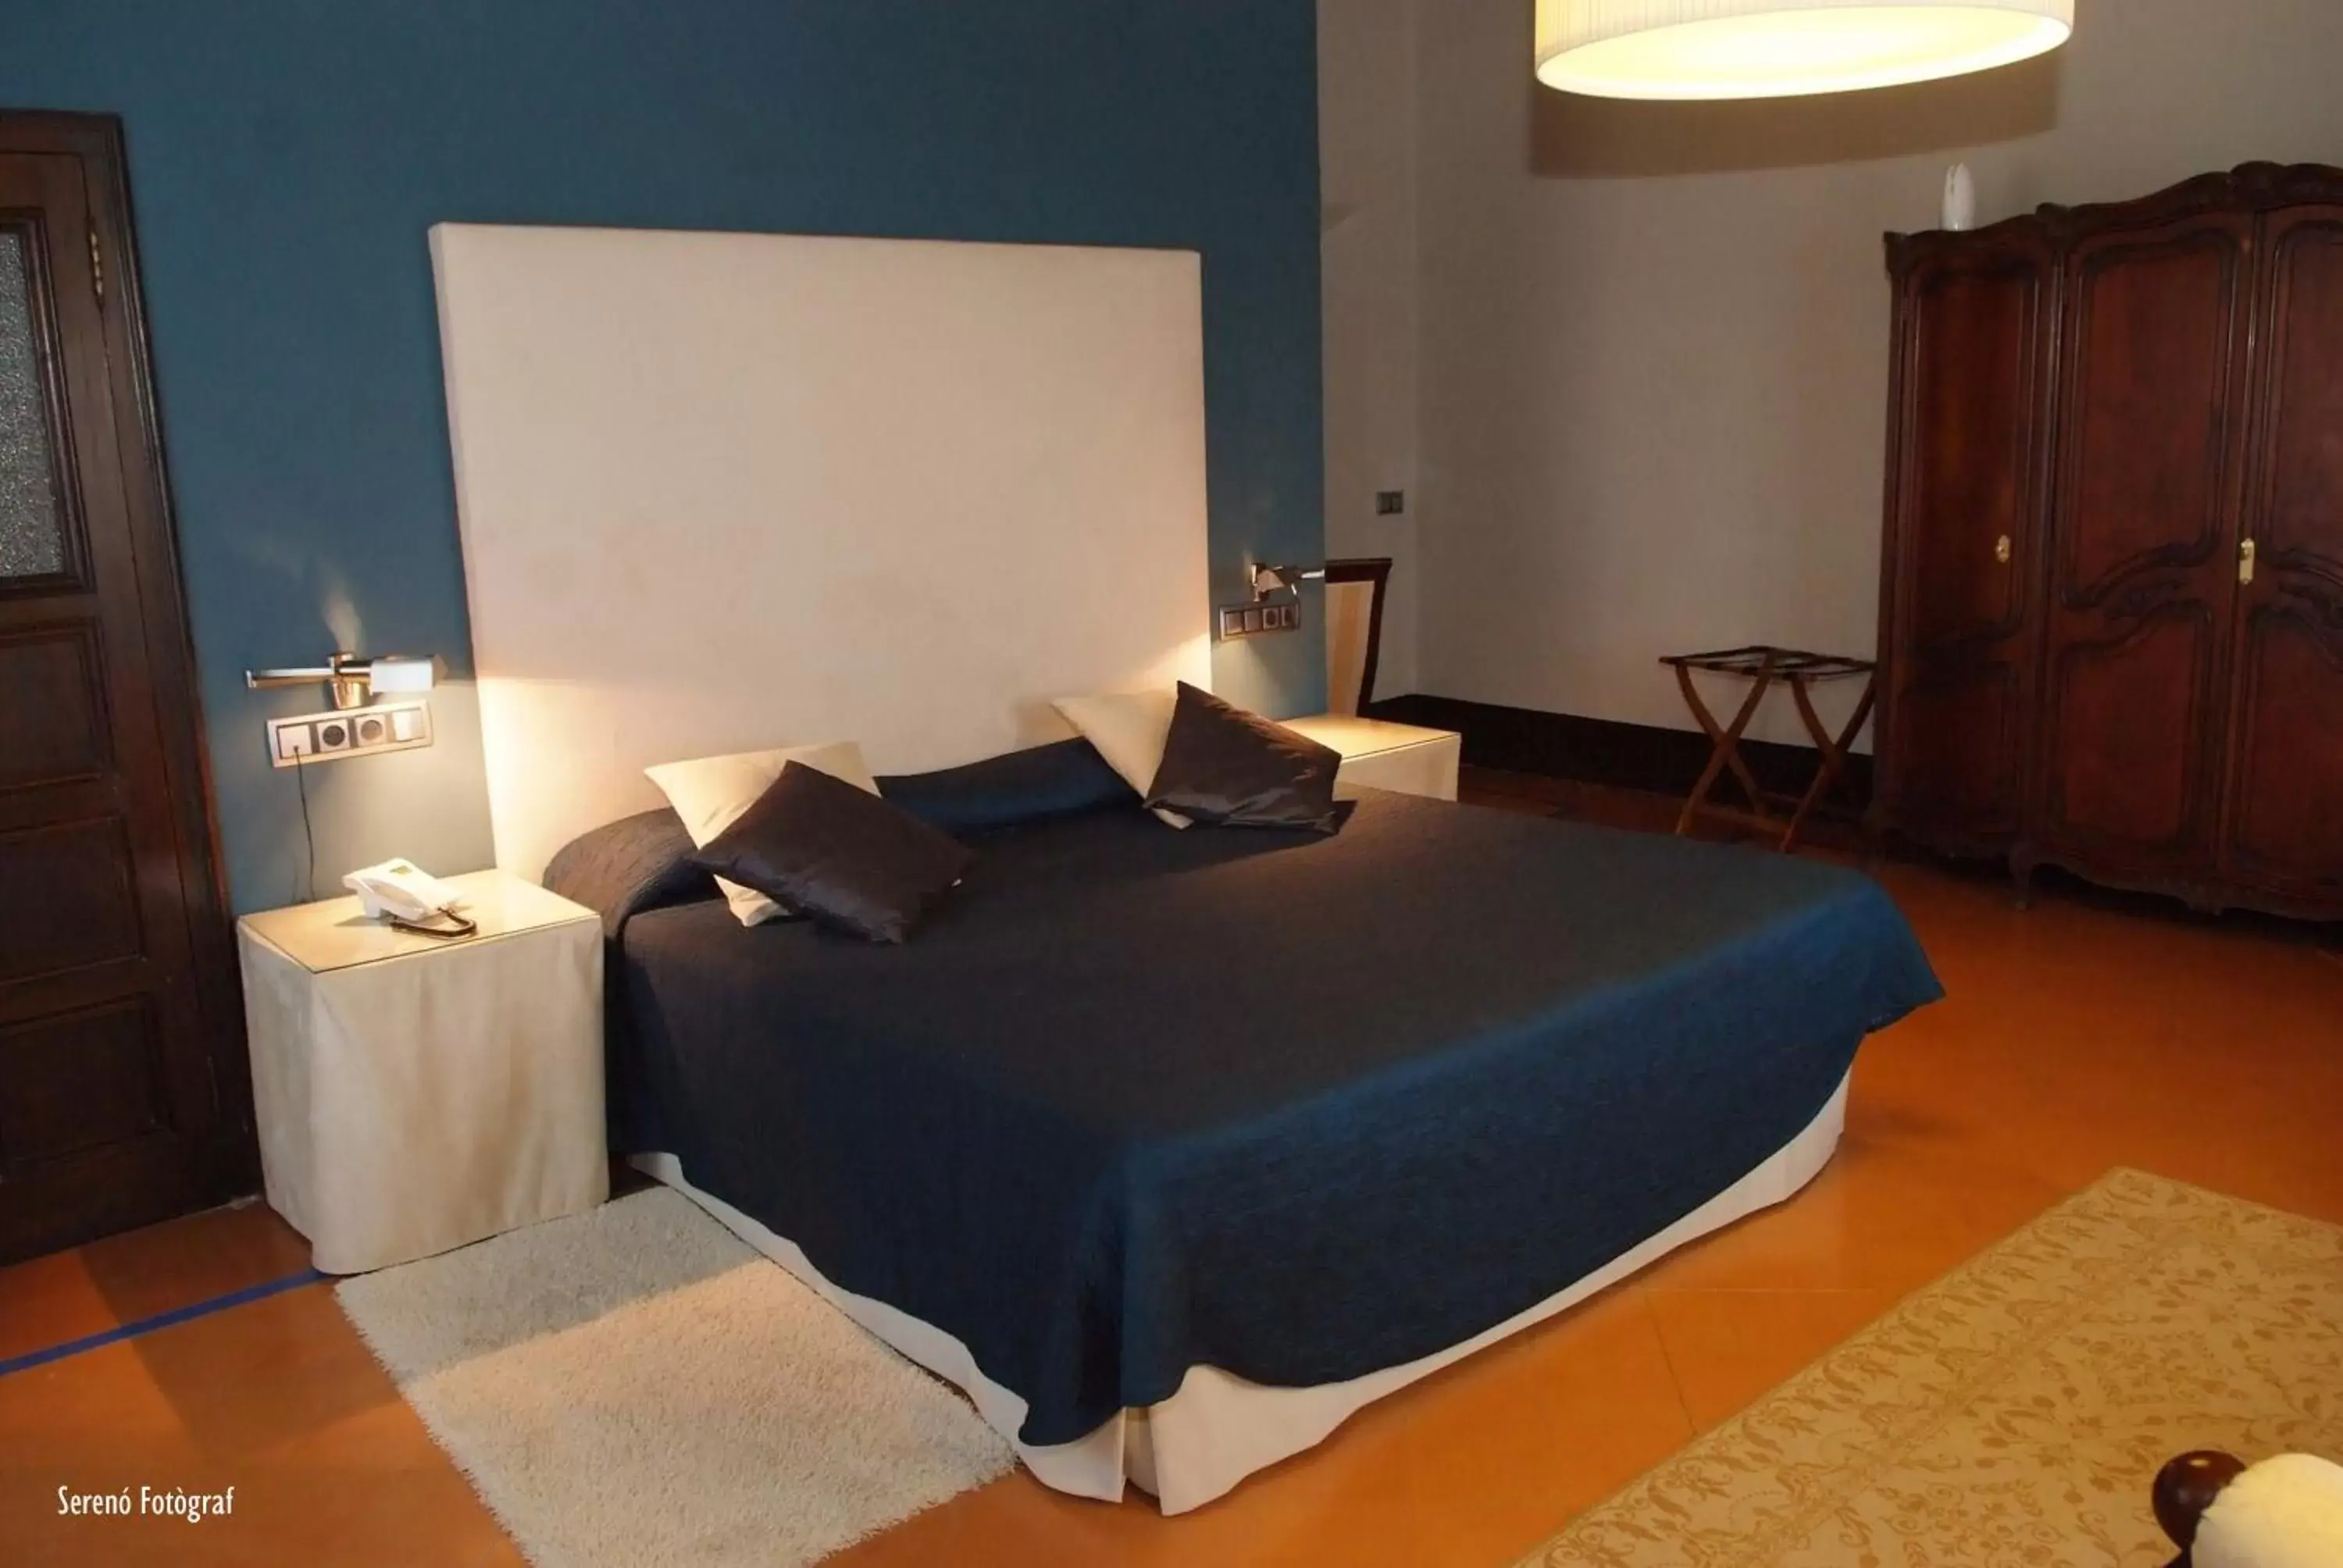 Bed in RVHotels Hotel Palau Lo Mirador